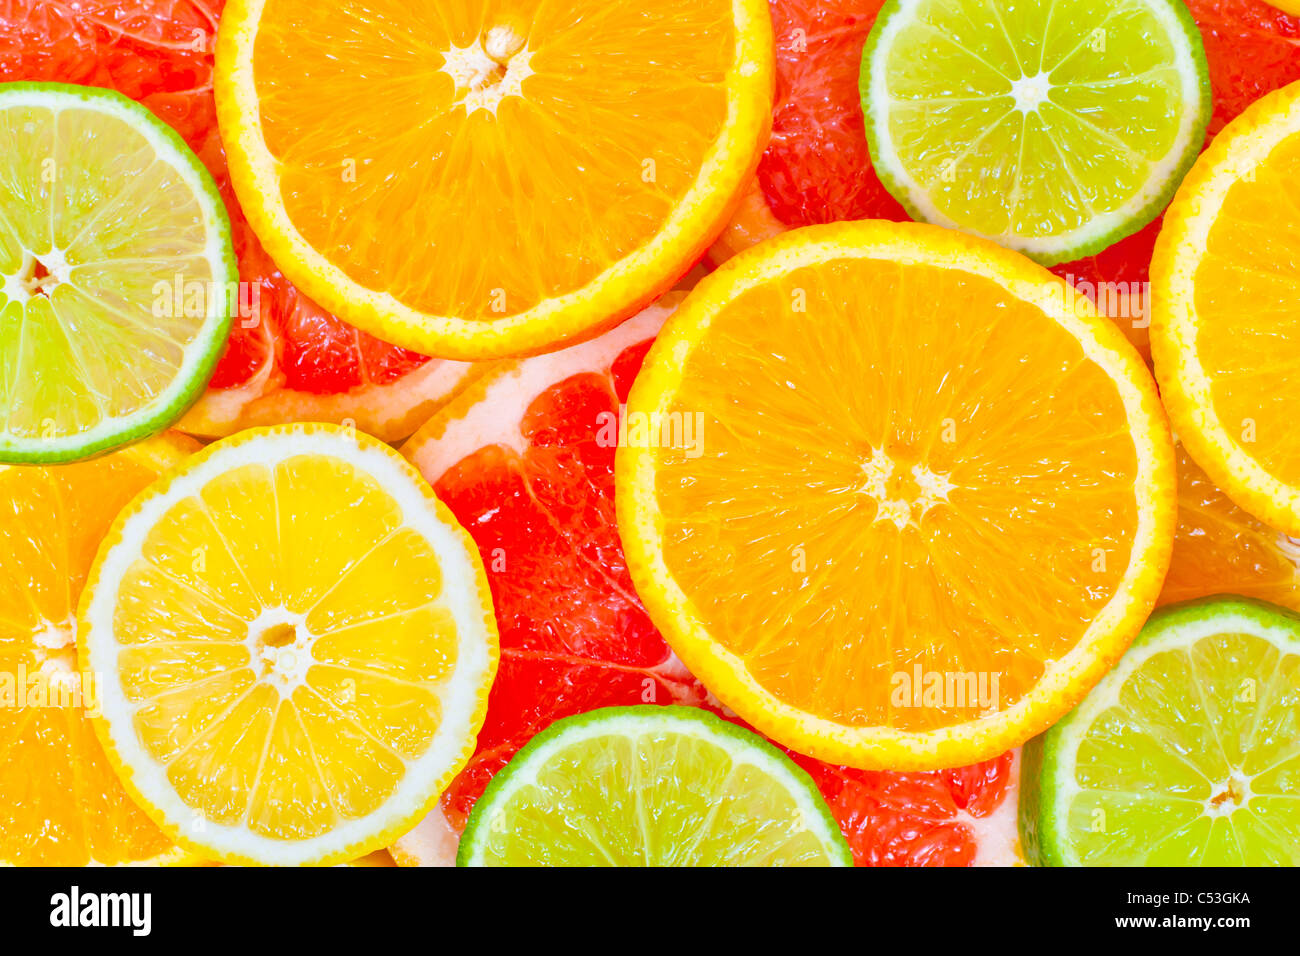 Mixed citrus fruit background Stock Photo